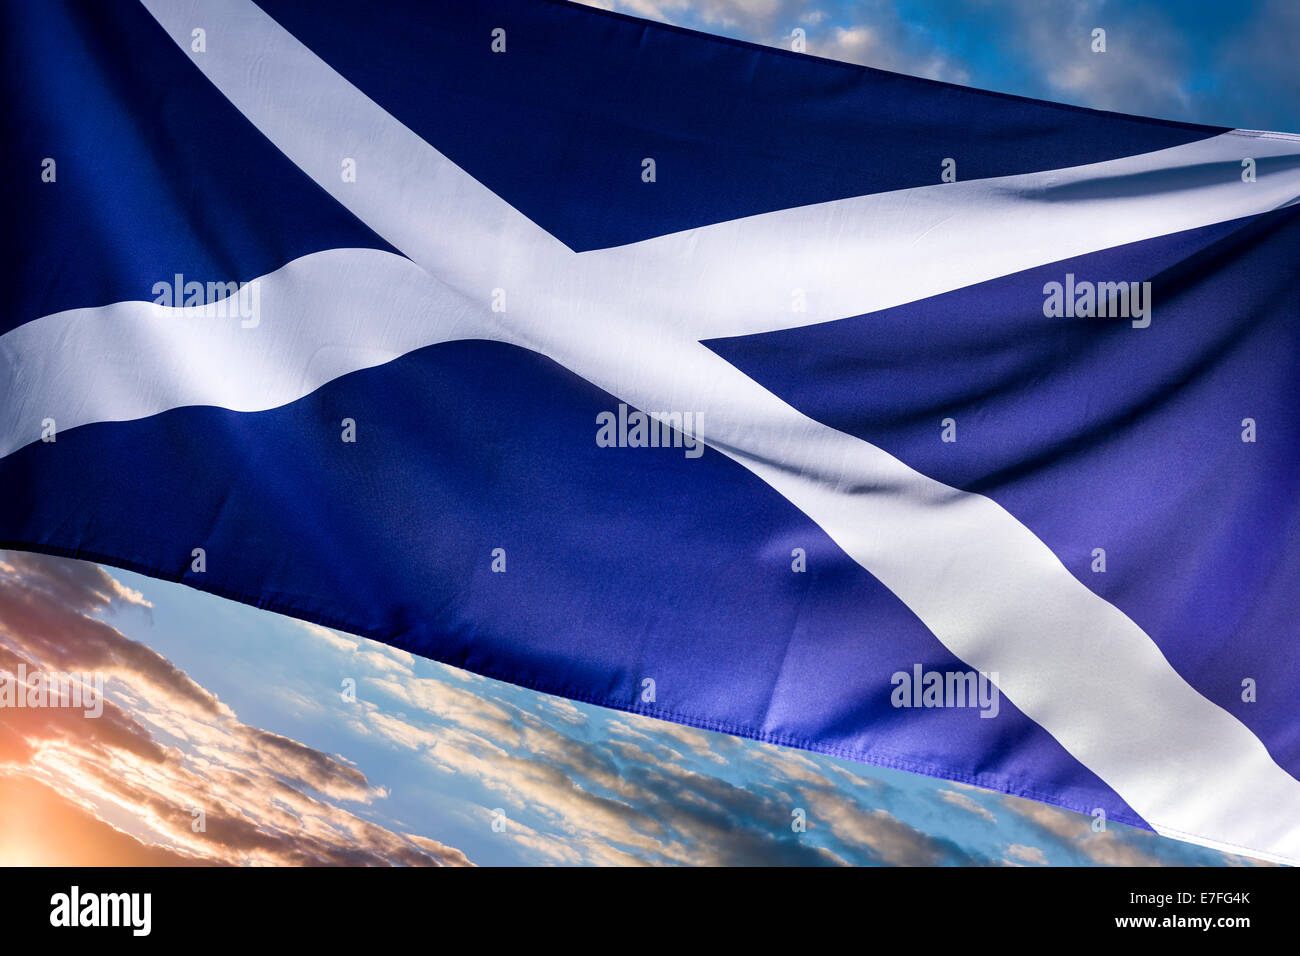 Dawn, Sautoir écossais - drapeau écossais Banque D'Images